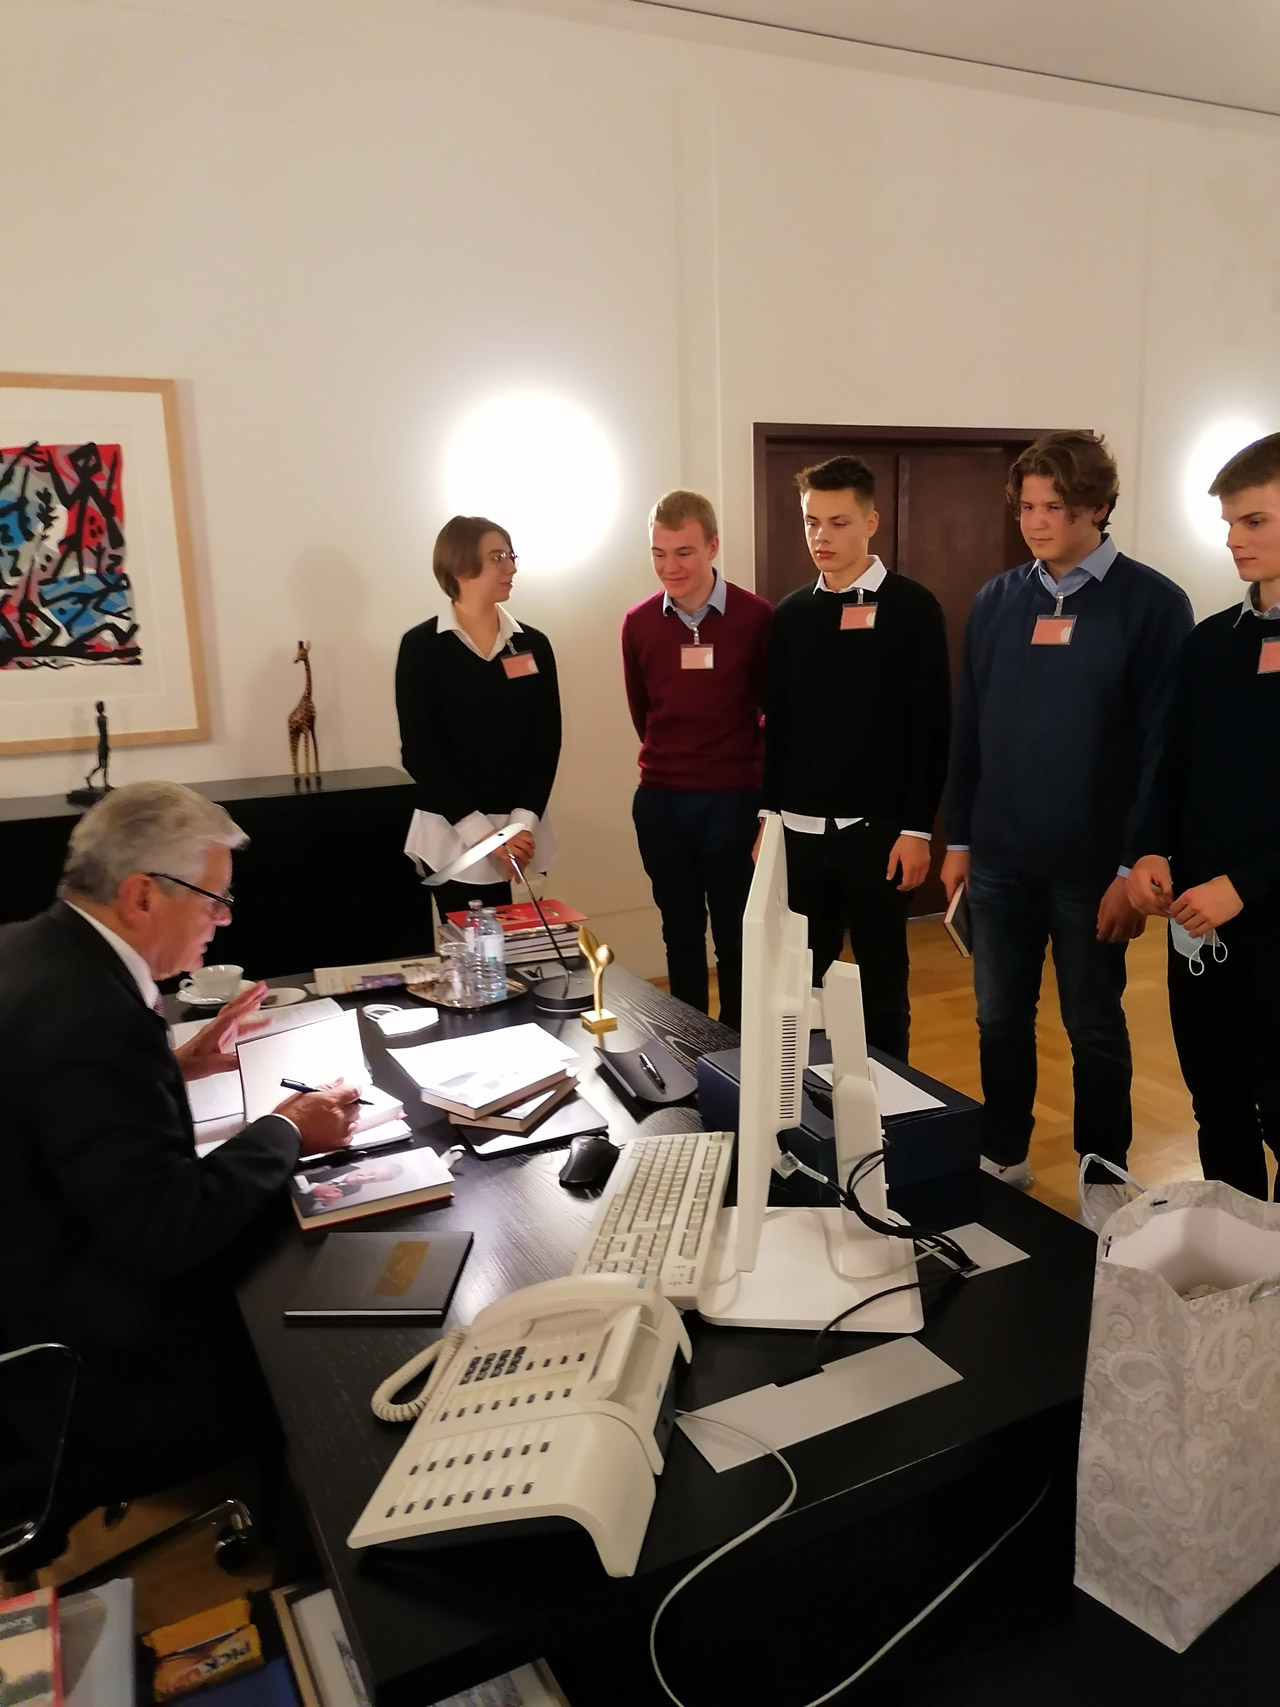 Signierstunde – Nach dem Interview hatten die Teilnehmer noch die Gelegenheit, ihre mitgebrachten Bücher von Herrn Gauck signieren zu lassen